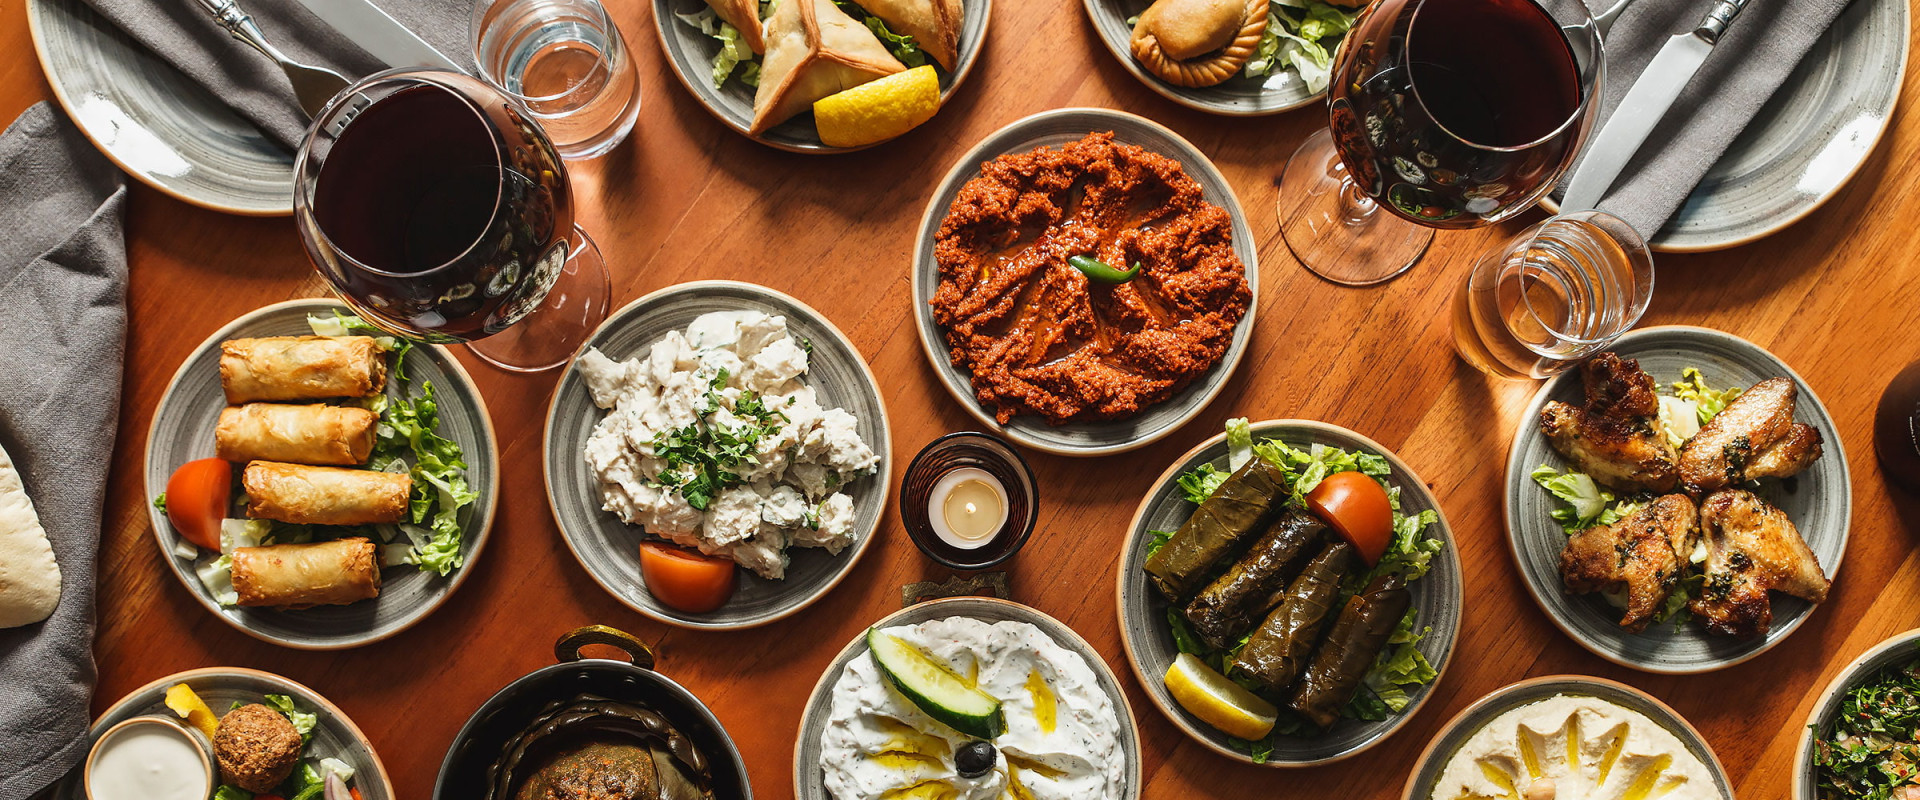 The Sweet Side of Lebanese Cuisine in Denver